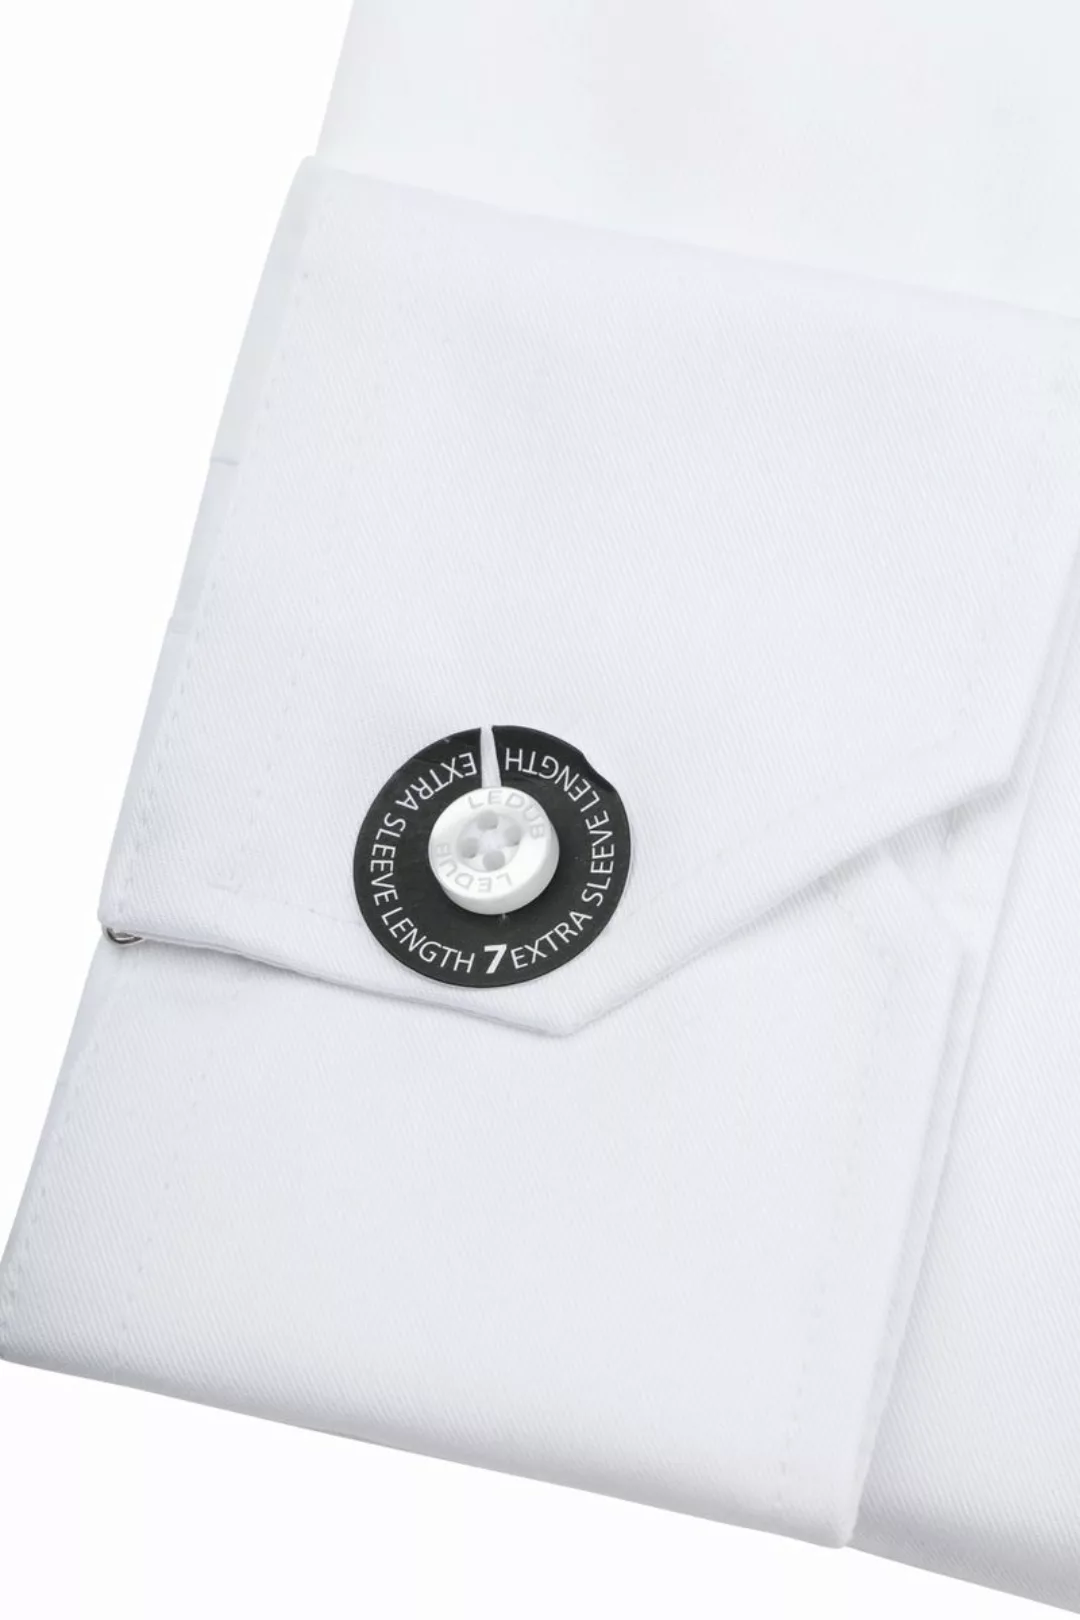 Ledub Hemd Weiß Brusttassche Extra Long Sleeves - Größe 39 günstig online kaufen